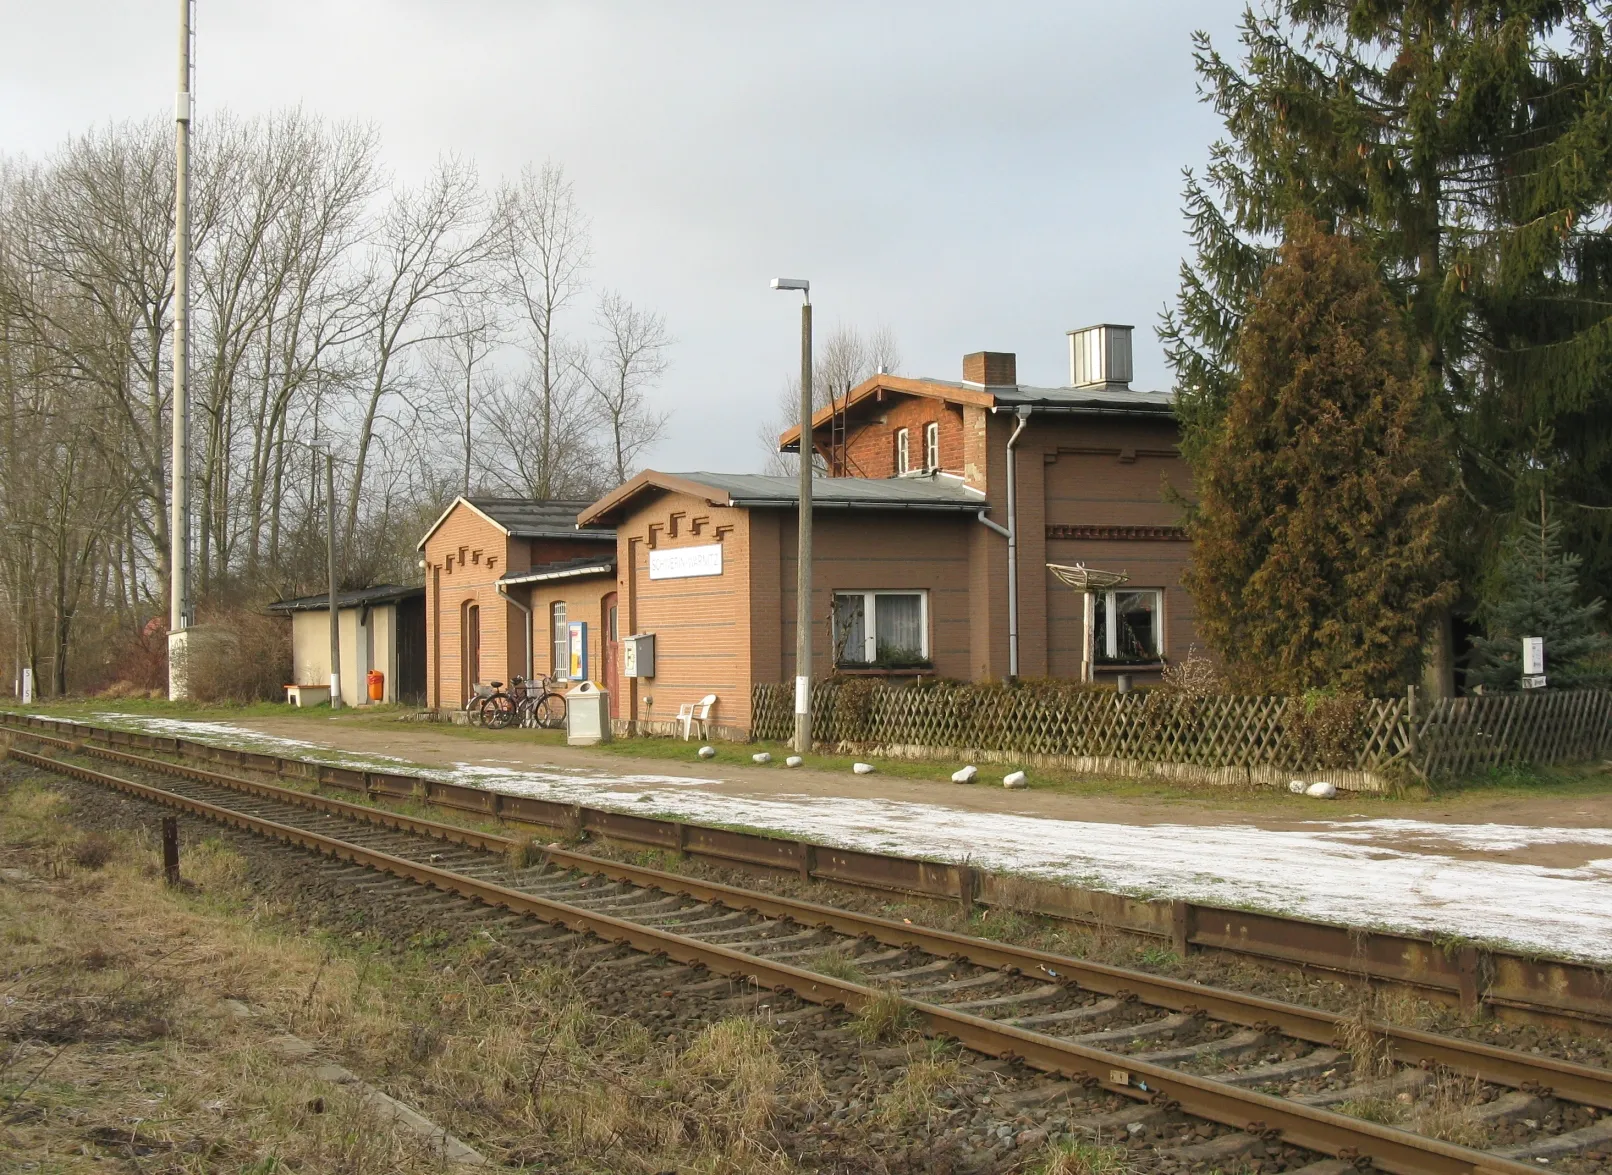 Photo showing: Schwerin-Warnitz train station, Mecklenburg-Vorpommern, Germany